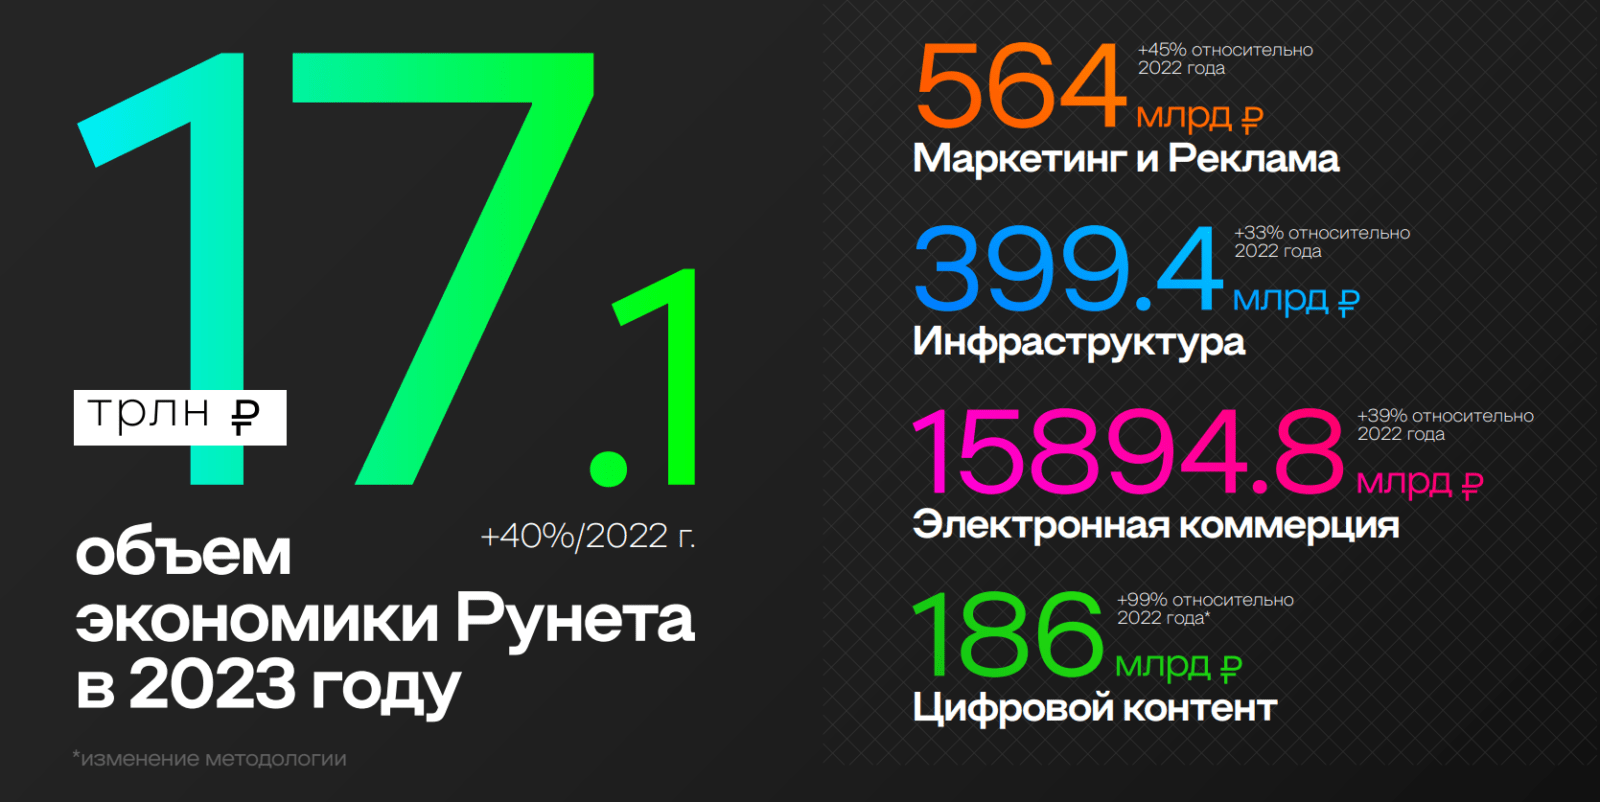 «Экономика Рунета» выросла на 40% в 2023 году – РАЭК